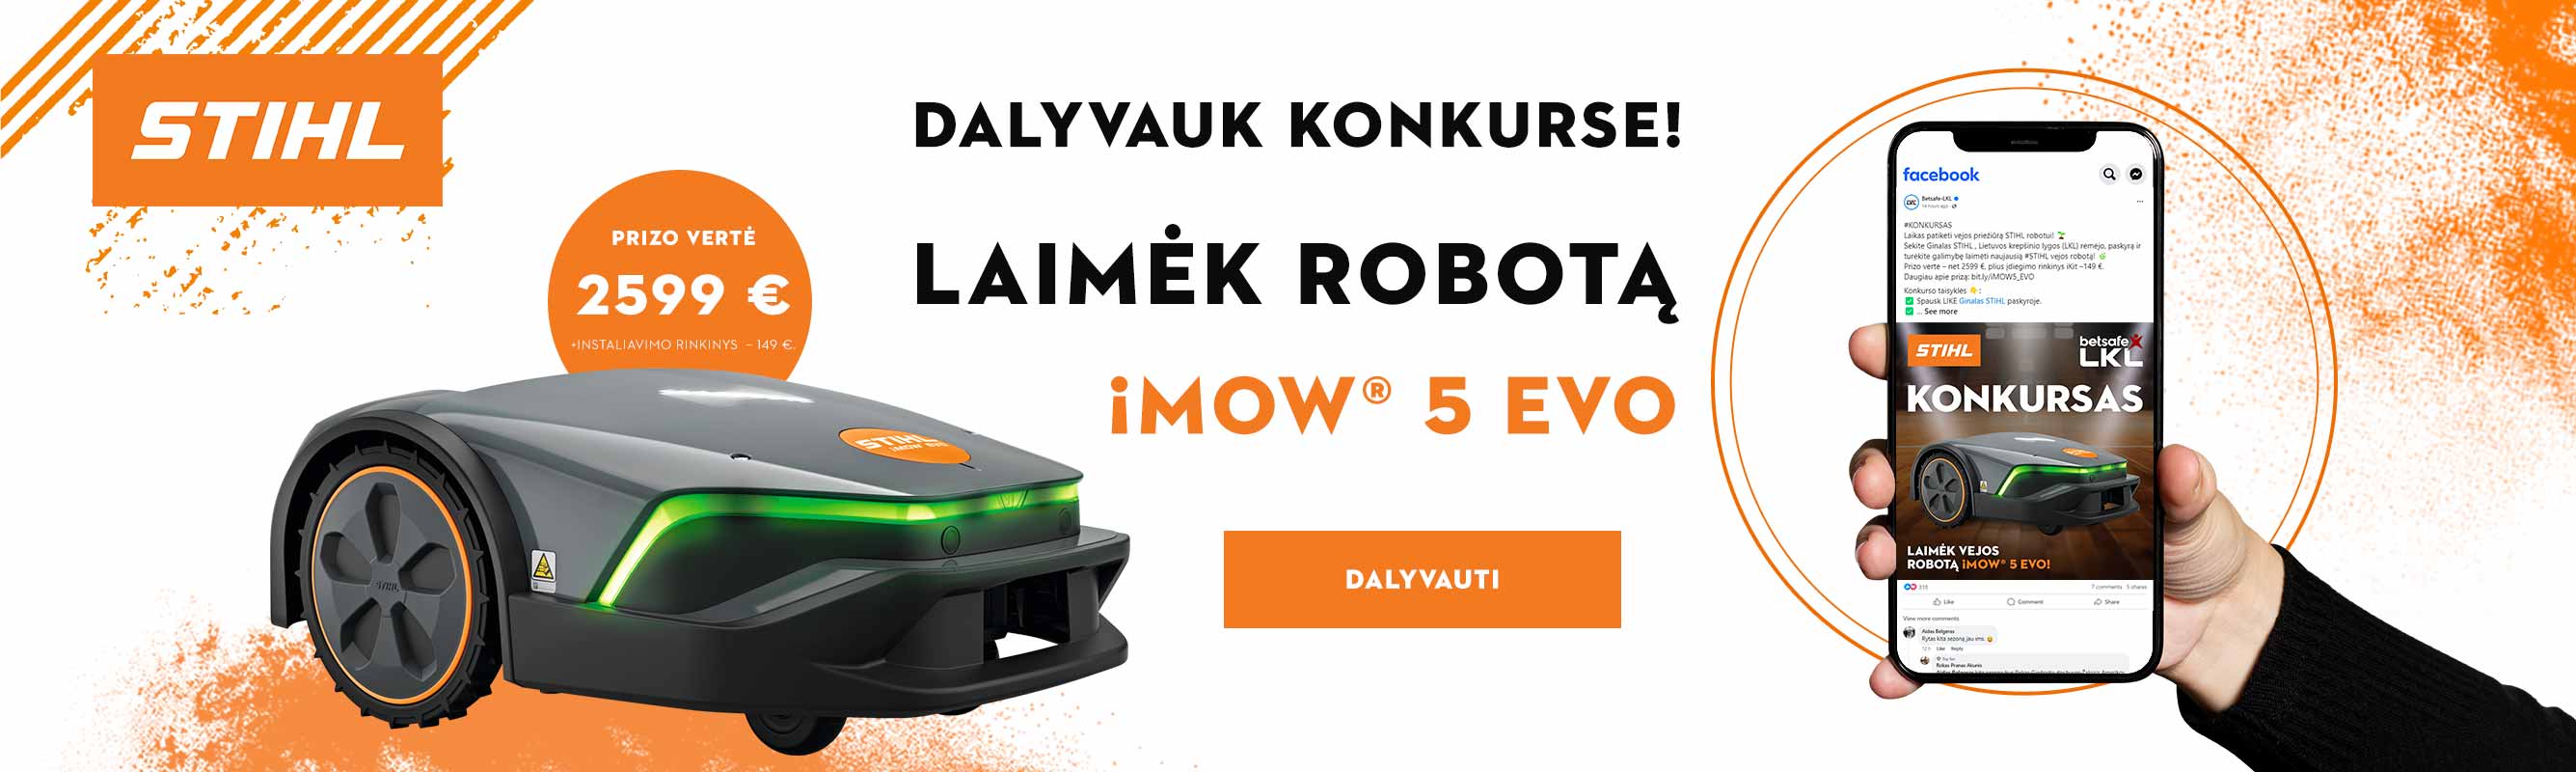 Dalyvauk konkurse ir laimėk iMOW® EVO 5 vejos robotą